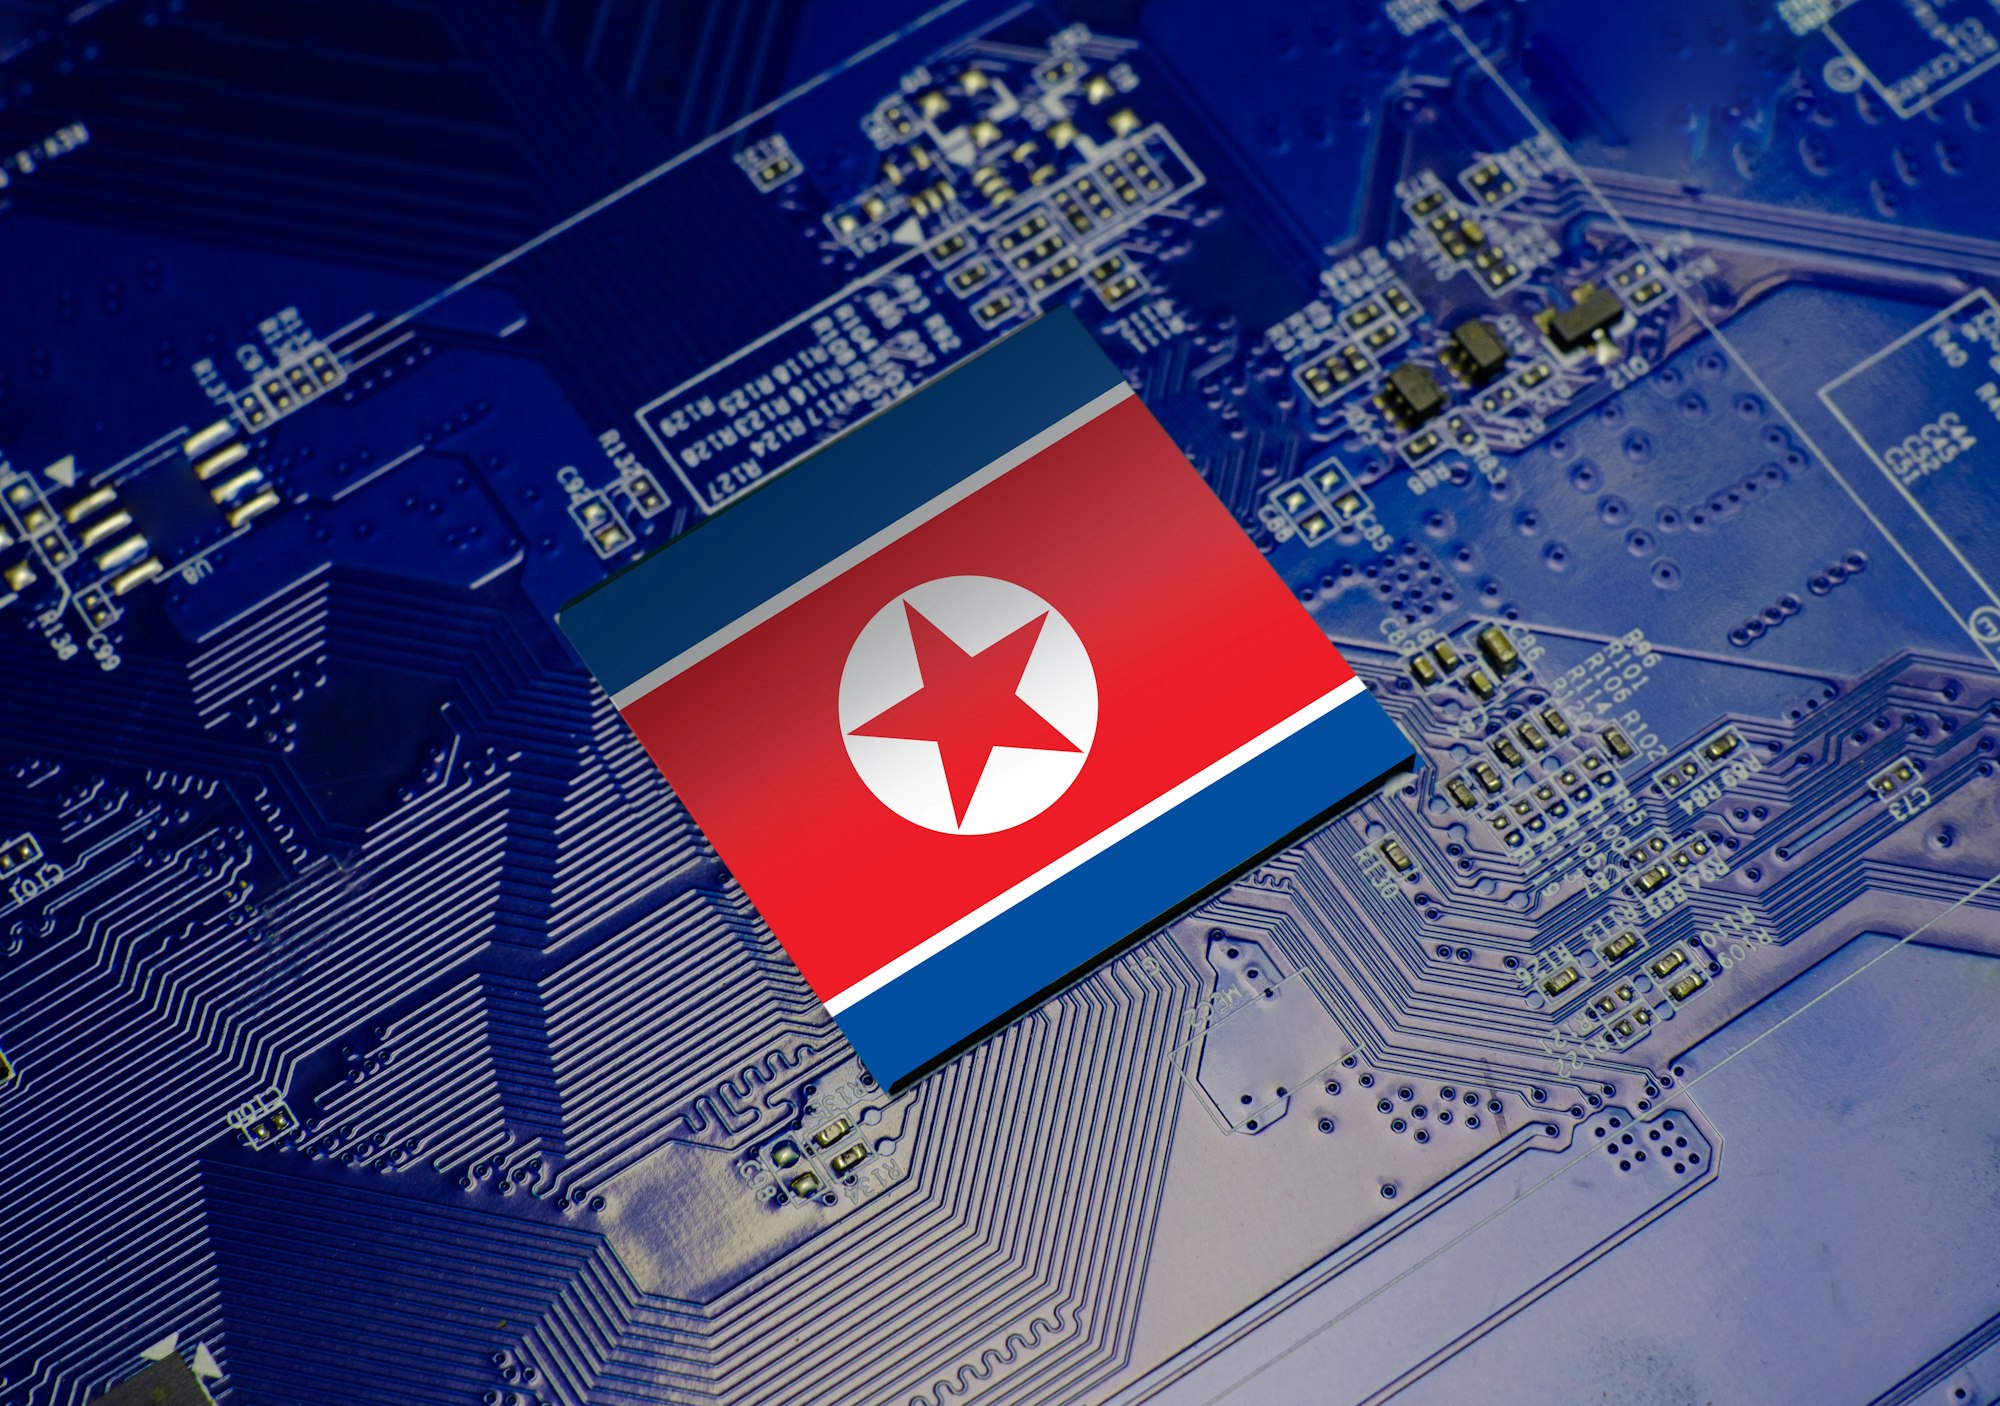 Les hackers nord-coréens infiltrent les multinationales américaines : le scandale qui secoue la cybersécurité !